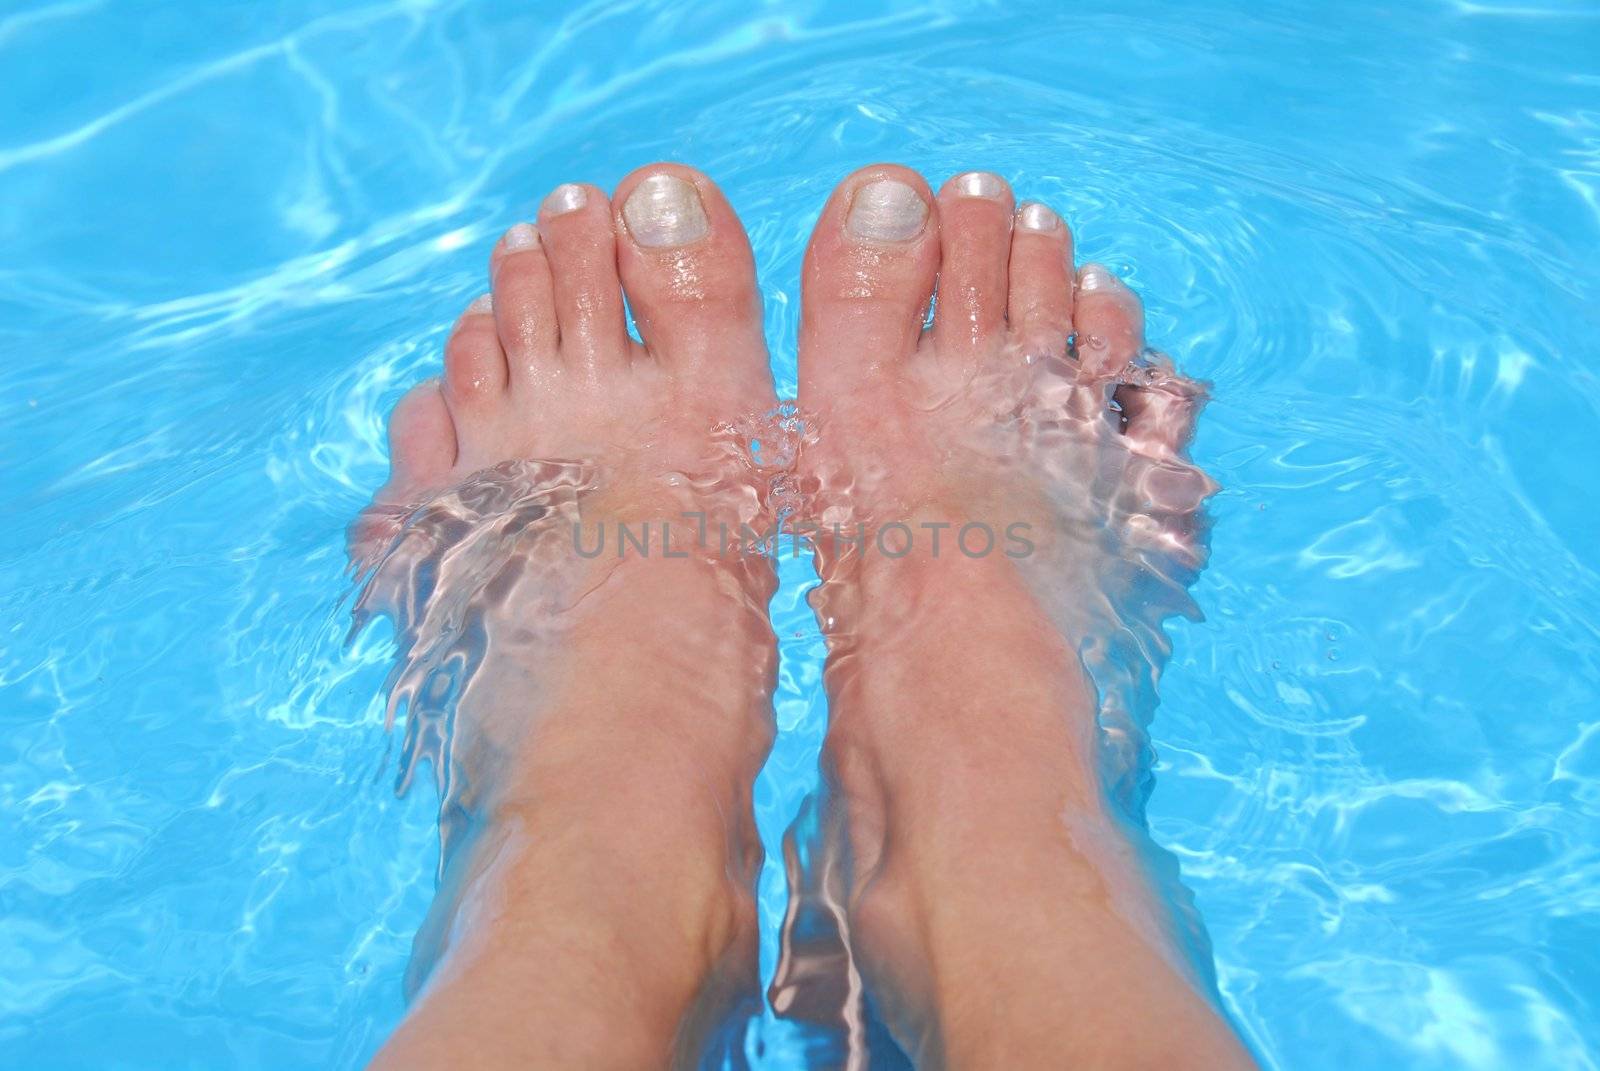 Feet in water by elenathewise